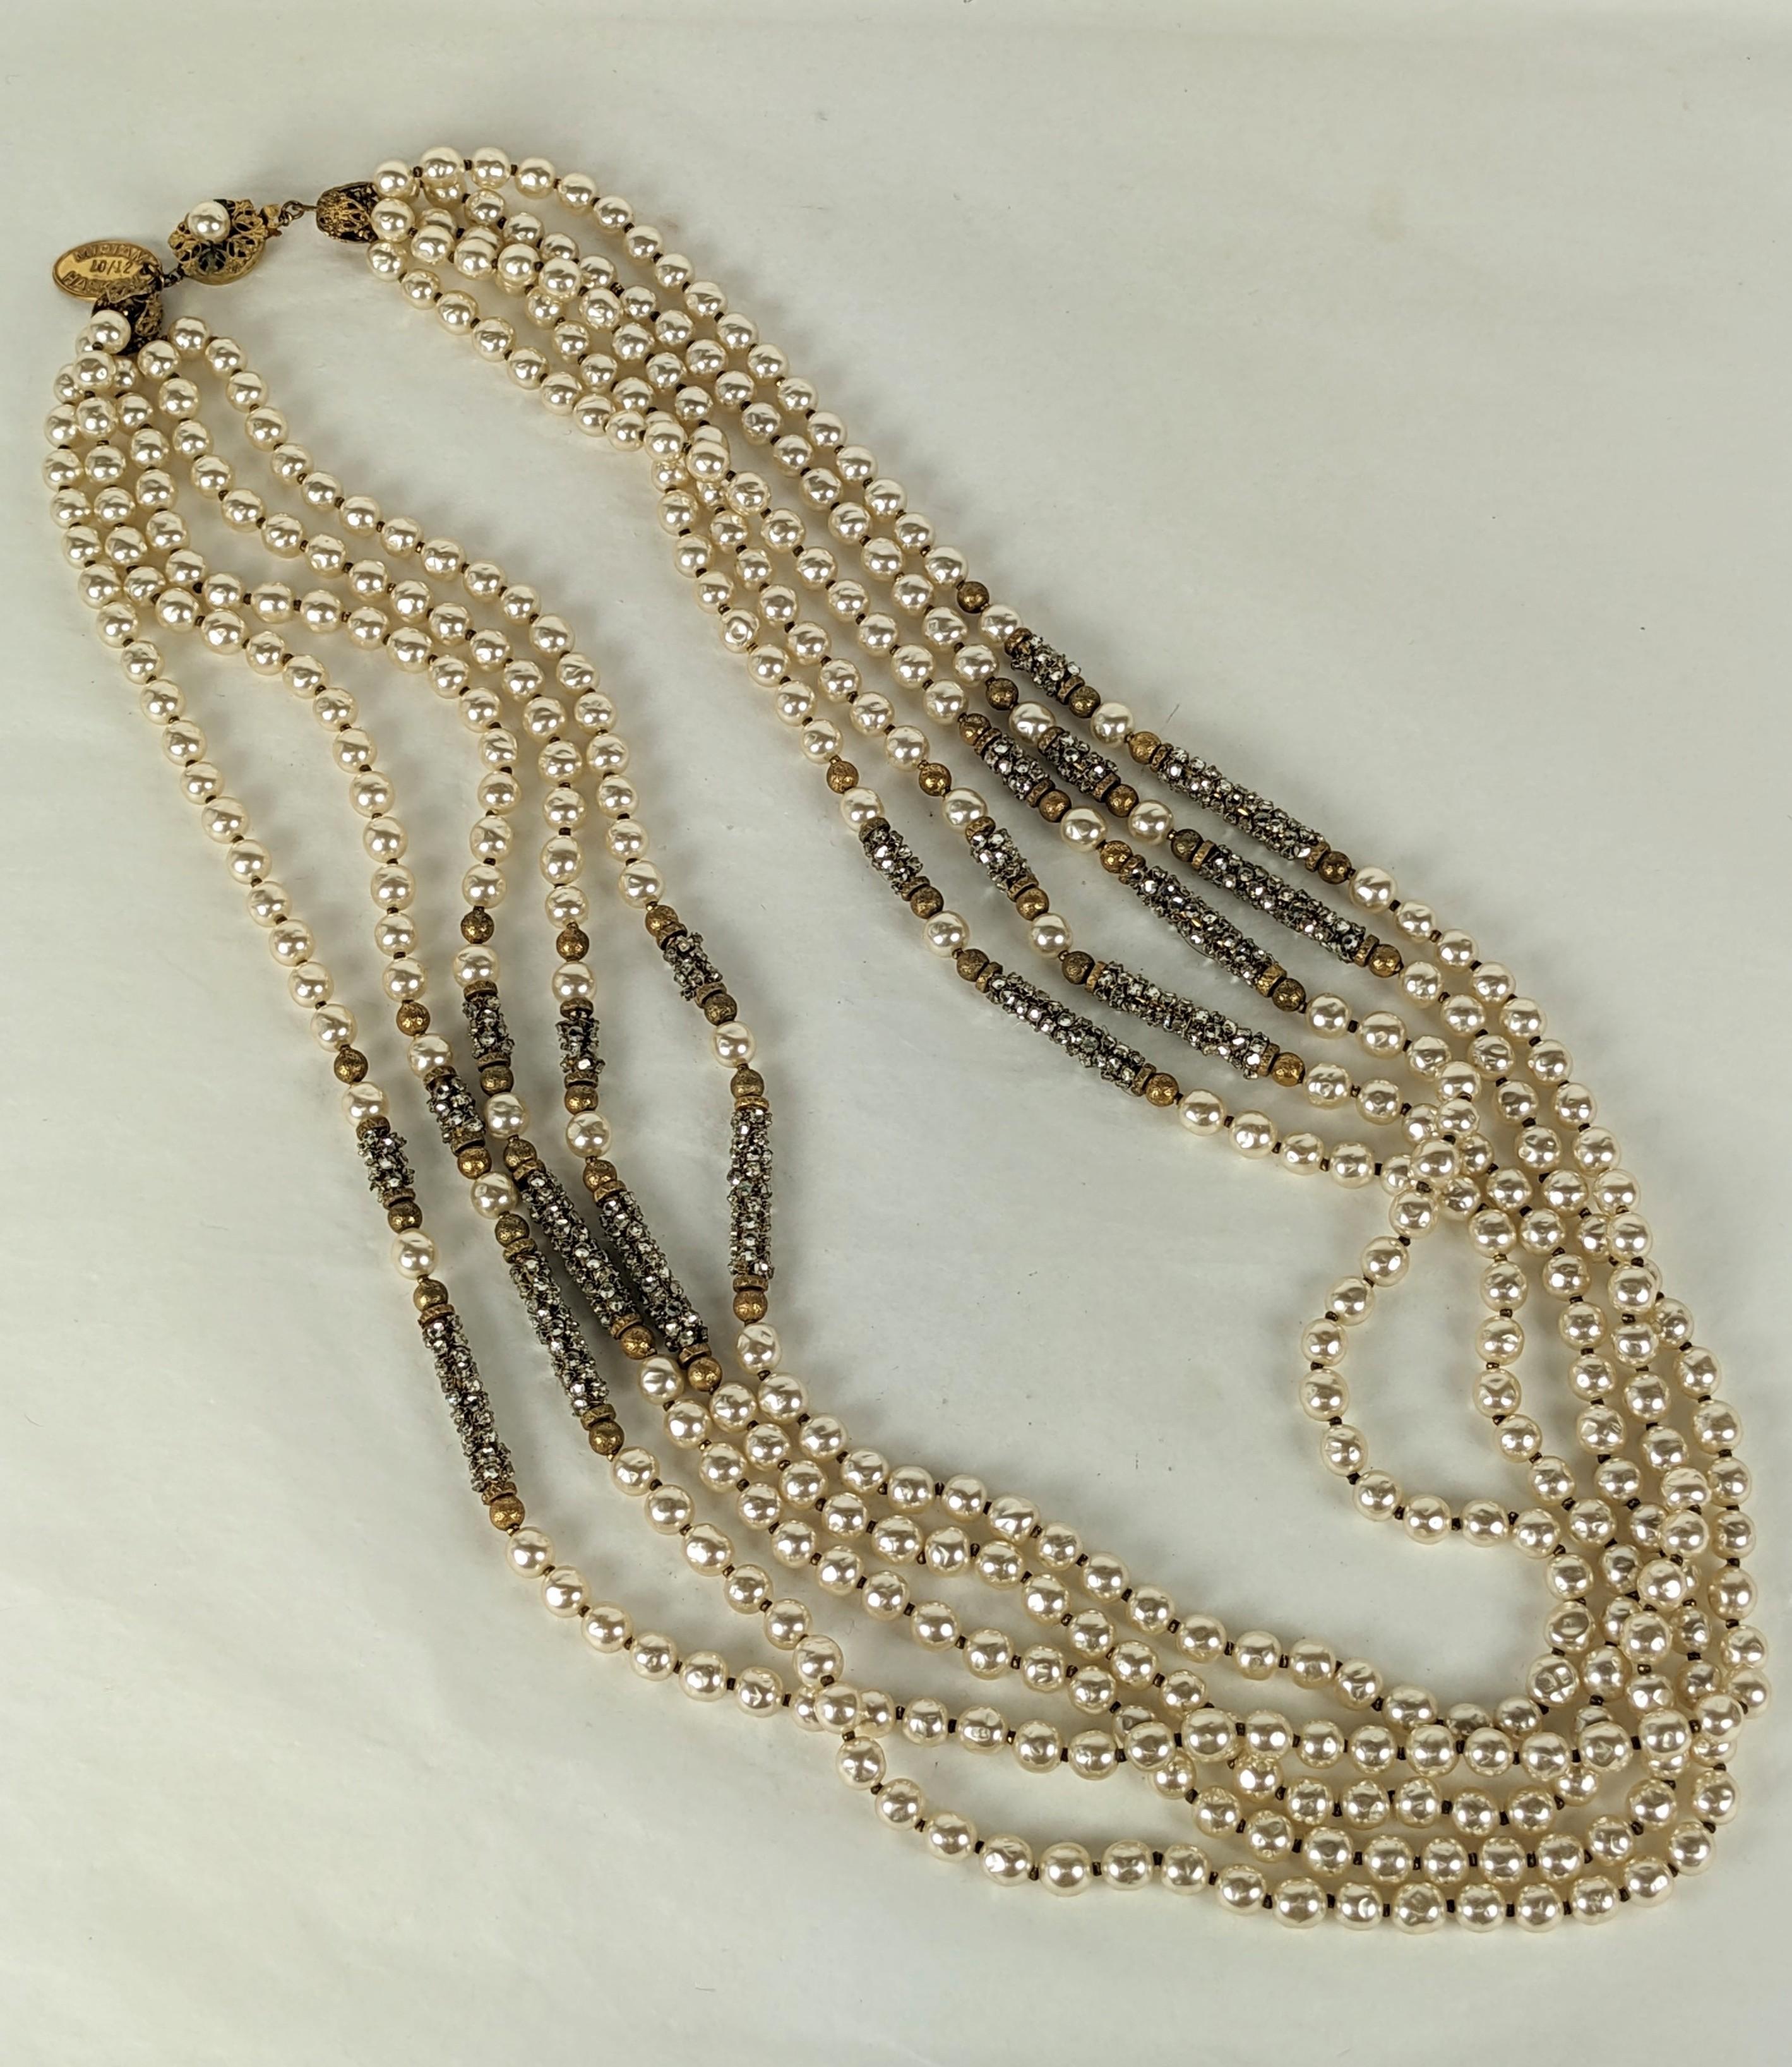 Exceptionnel collier de Miriam Haskell en perles et monts roses pavés, datant des années 1980. Ce collier est une réédition d'une célèbre pièce de Miriam Haskell datant des années 1930. Une série des plus belles pièces jamais produites a été